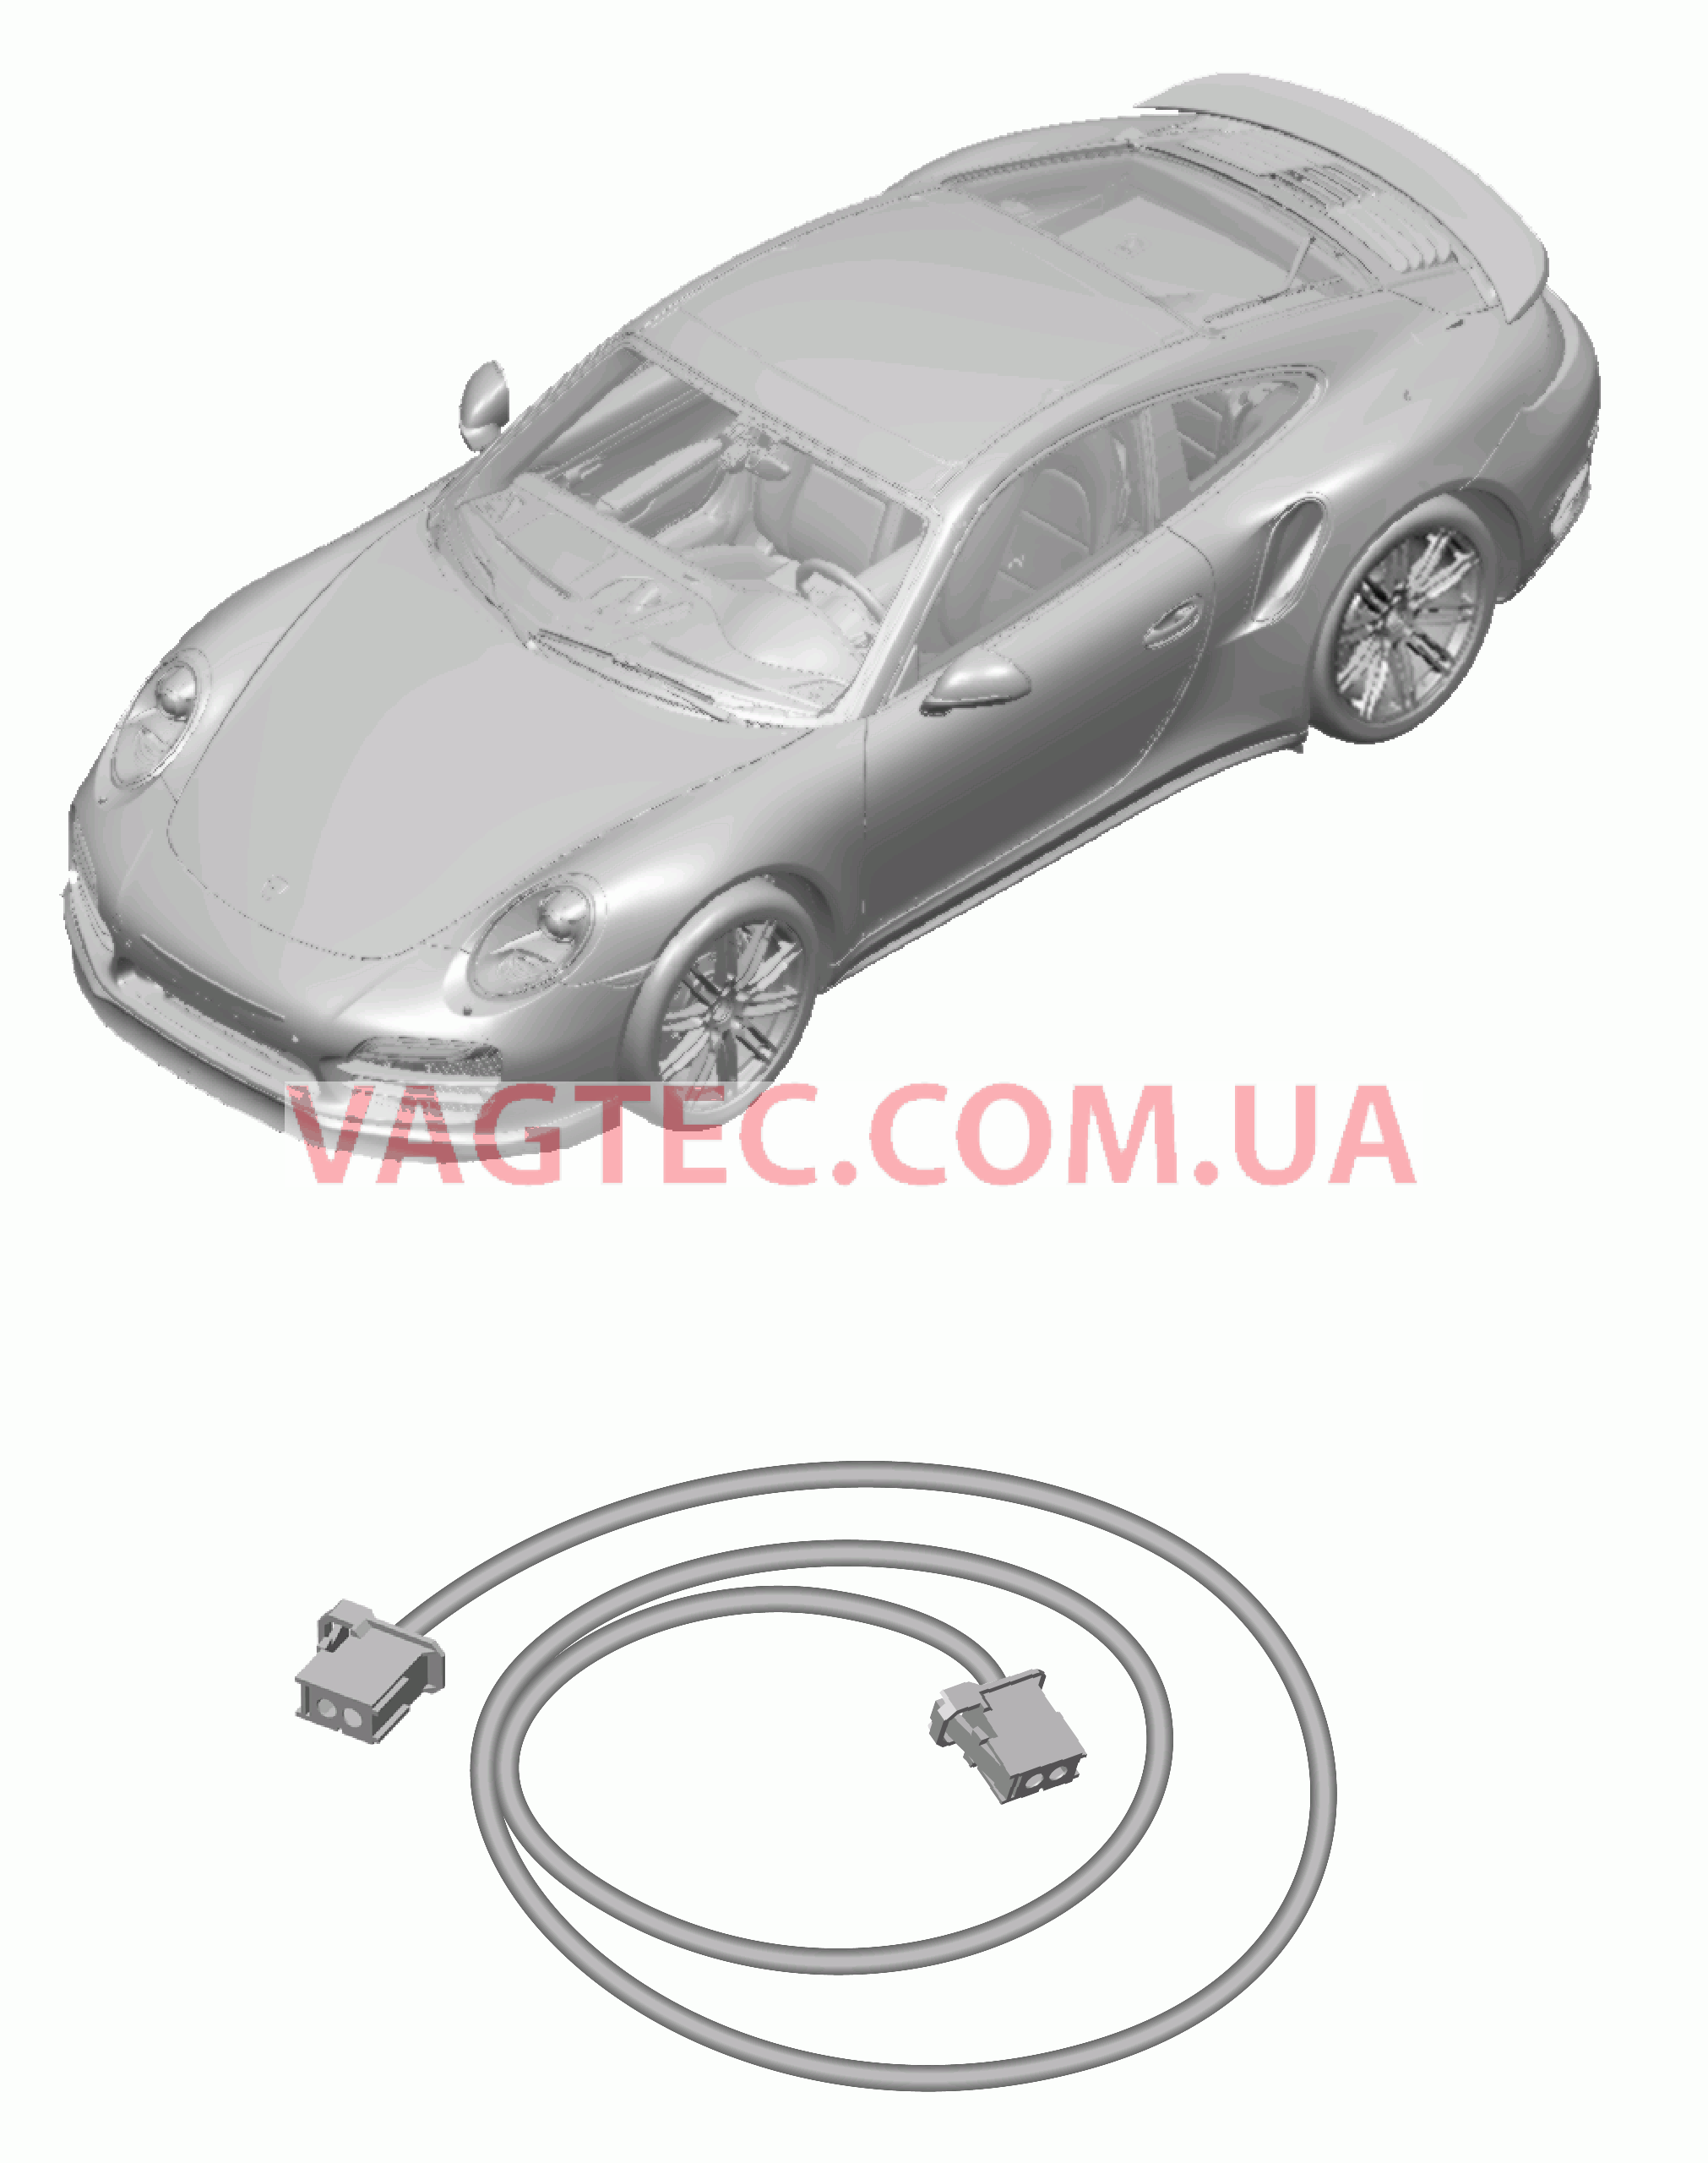 902-060 Жгуты проводов, Подушка безопасности, Ремень безопасности для PORSCHE Porsche991Turbo 2014-2017